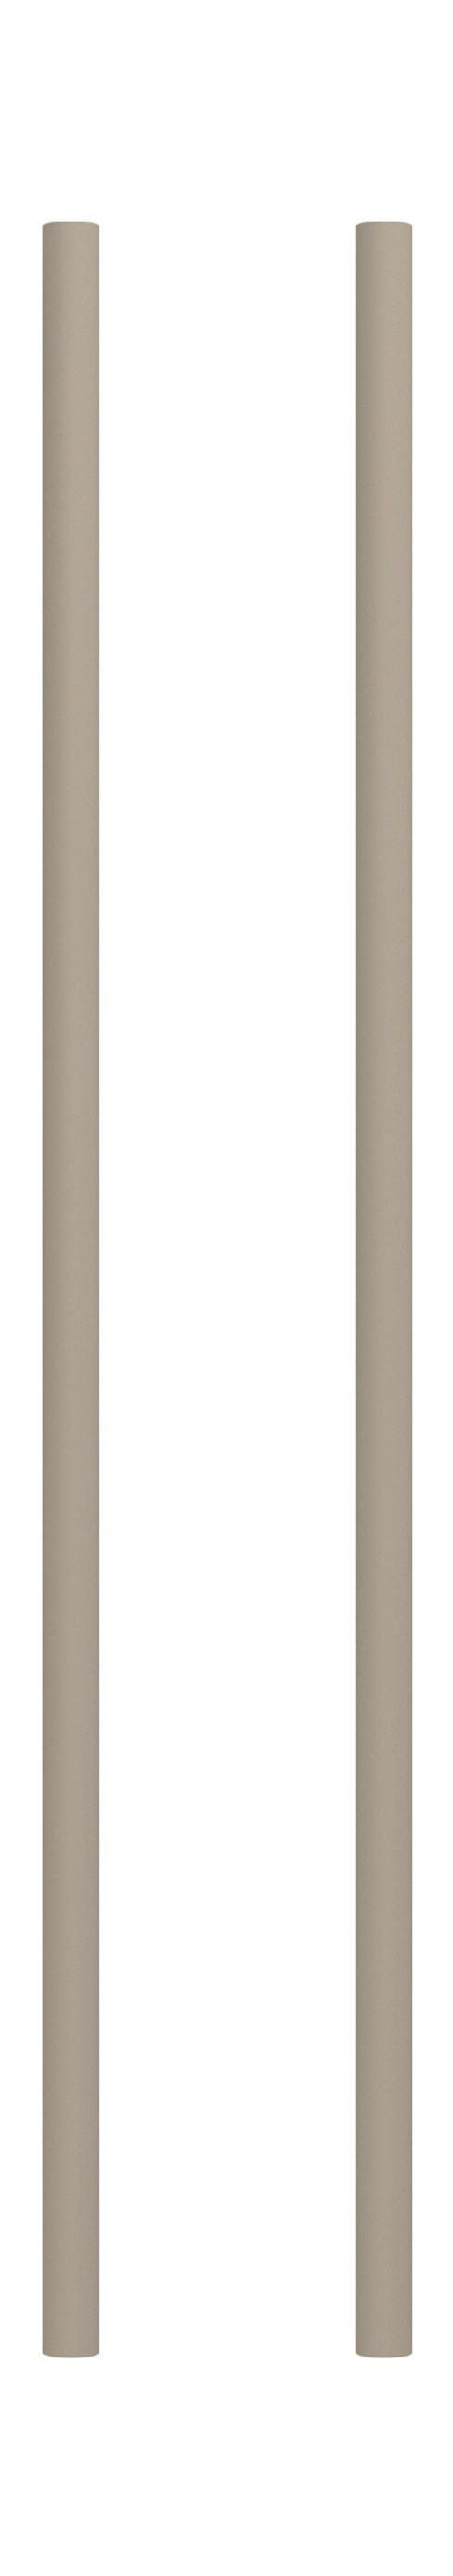 Moebe Splingsysteem/muurplanken been 65 cm, warm grijs